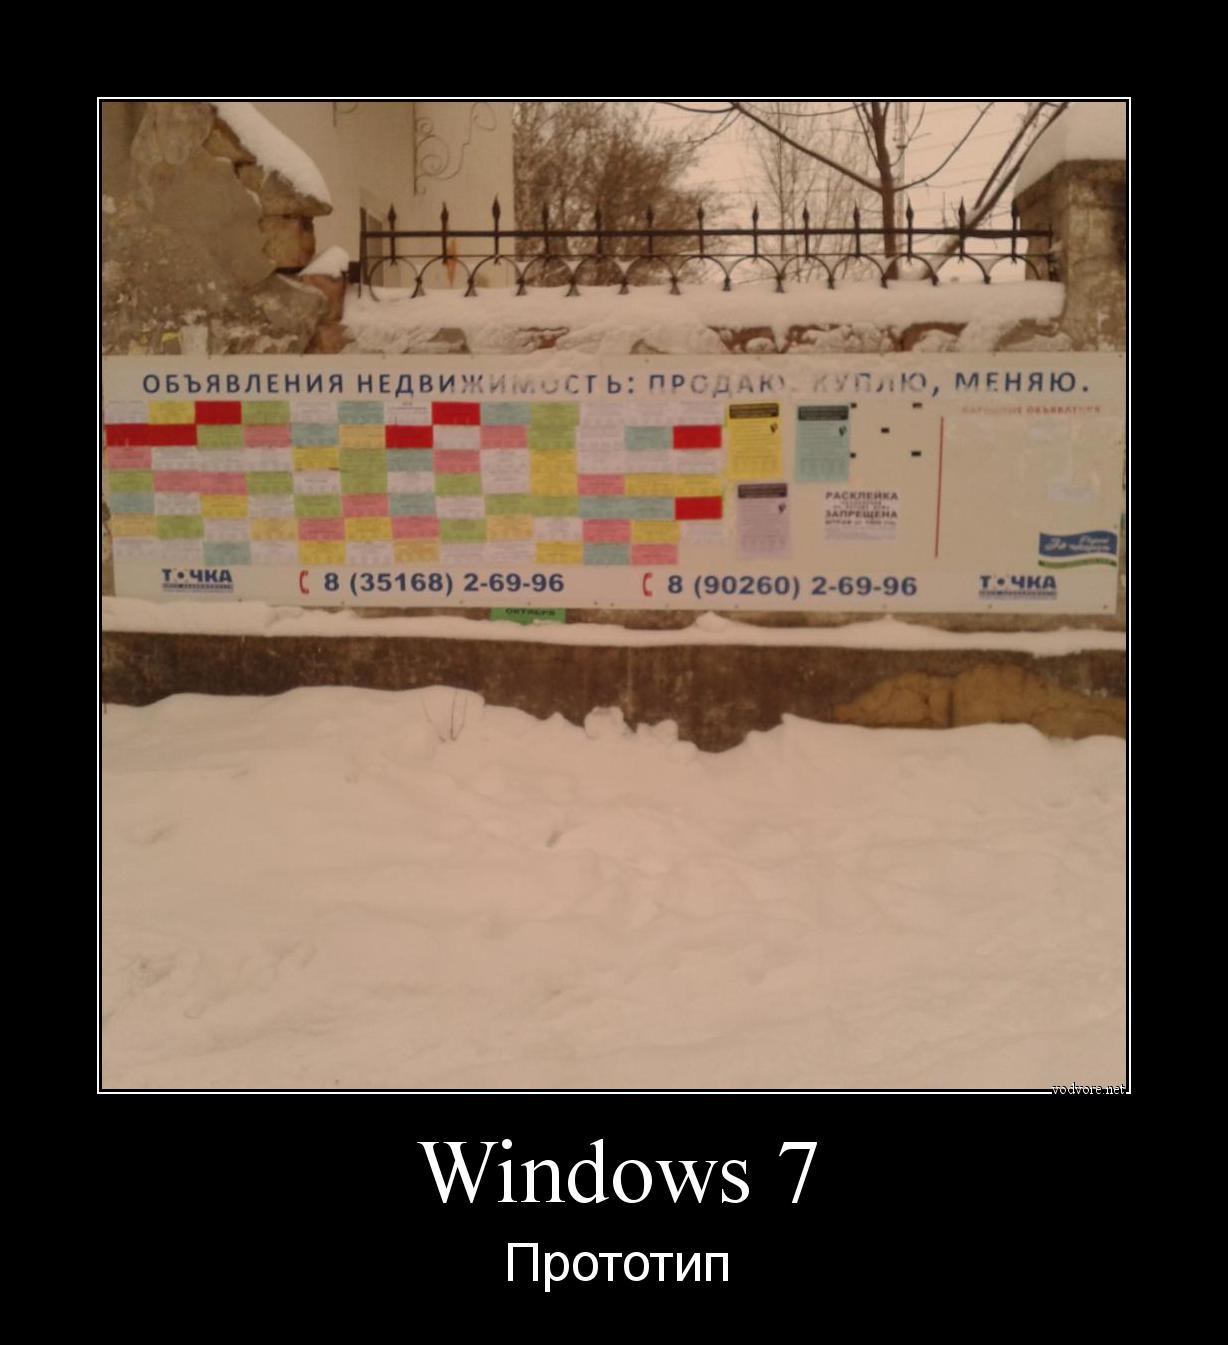 Демотиватор: Windows 7, Прототип